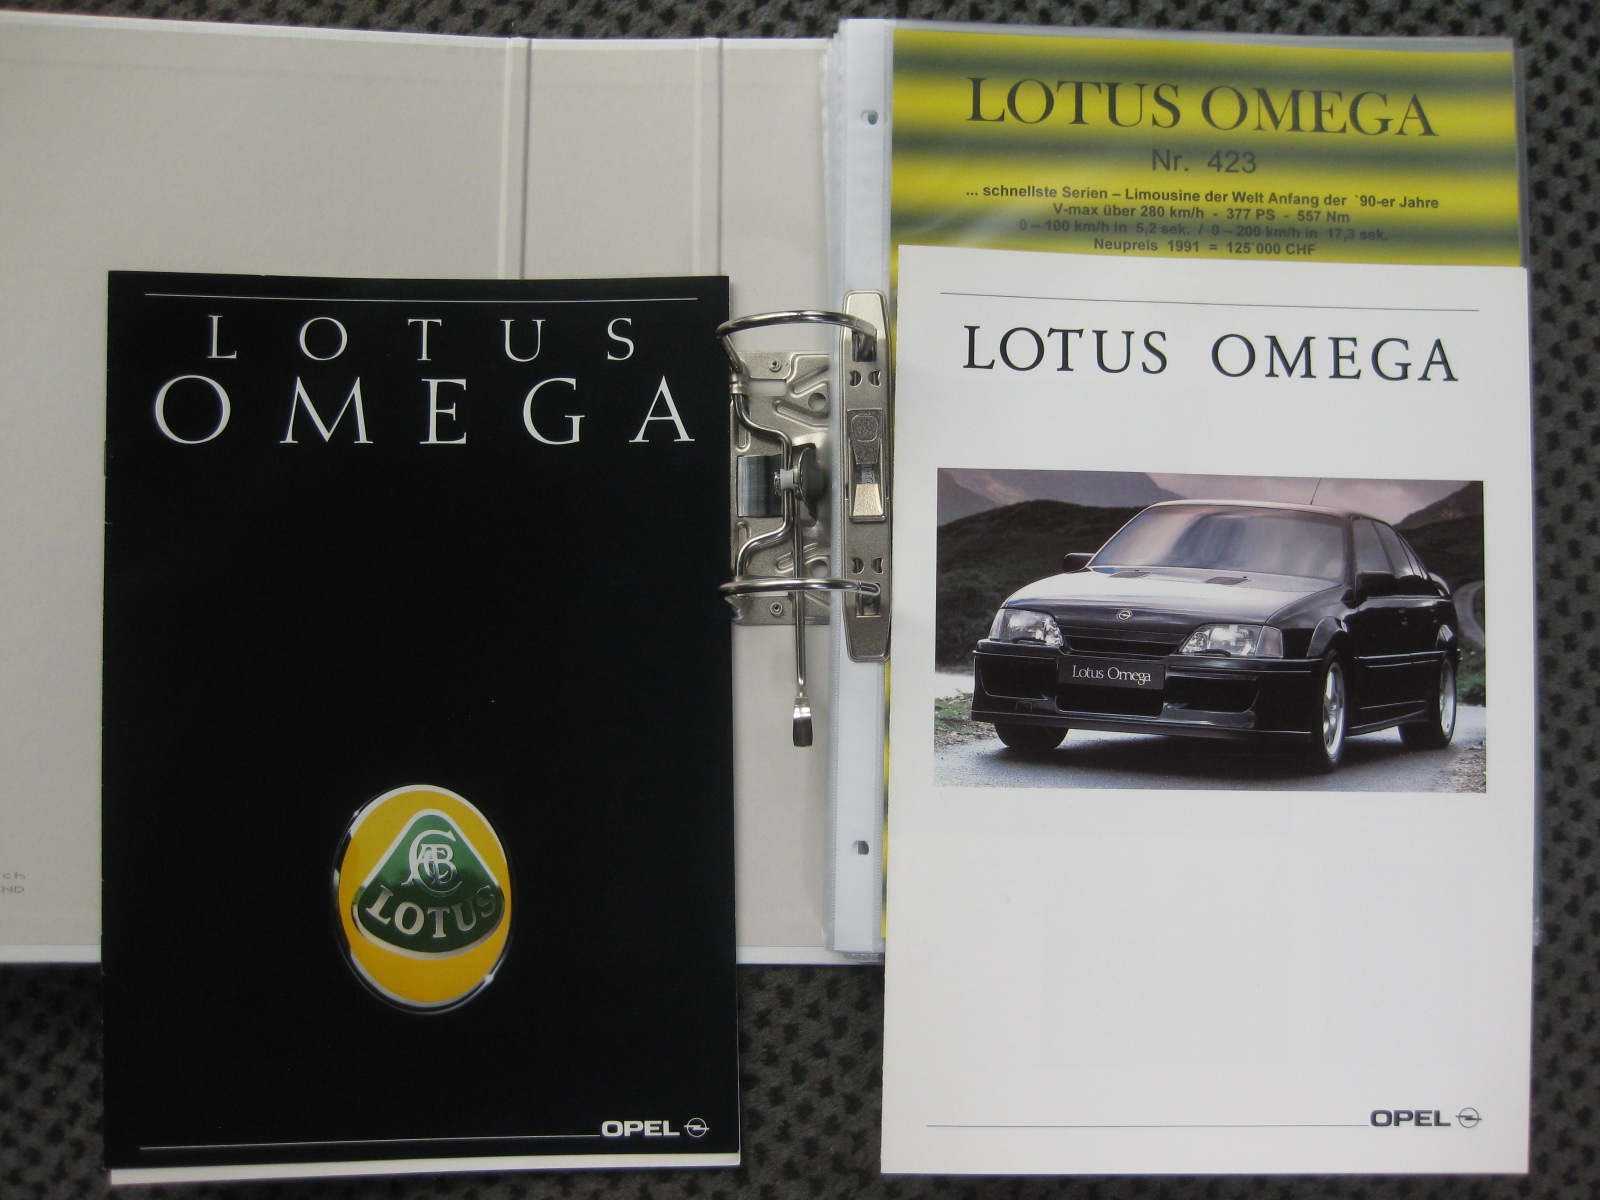 Opel Lotus Omega Limousine